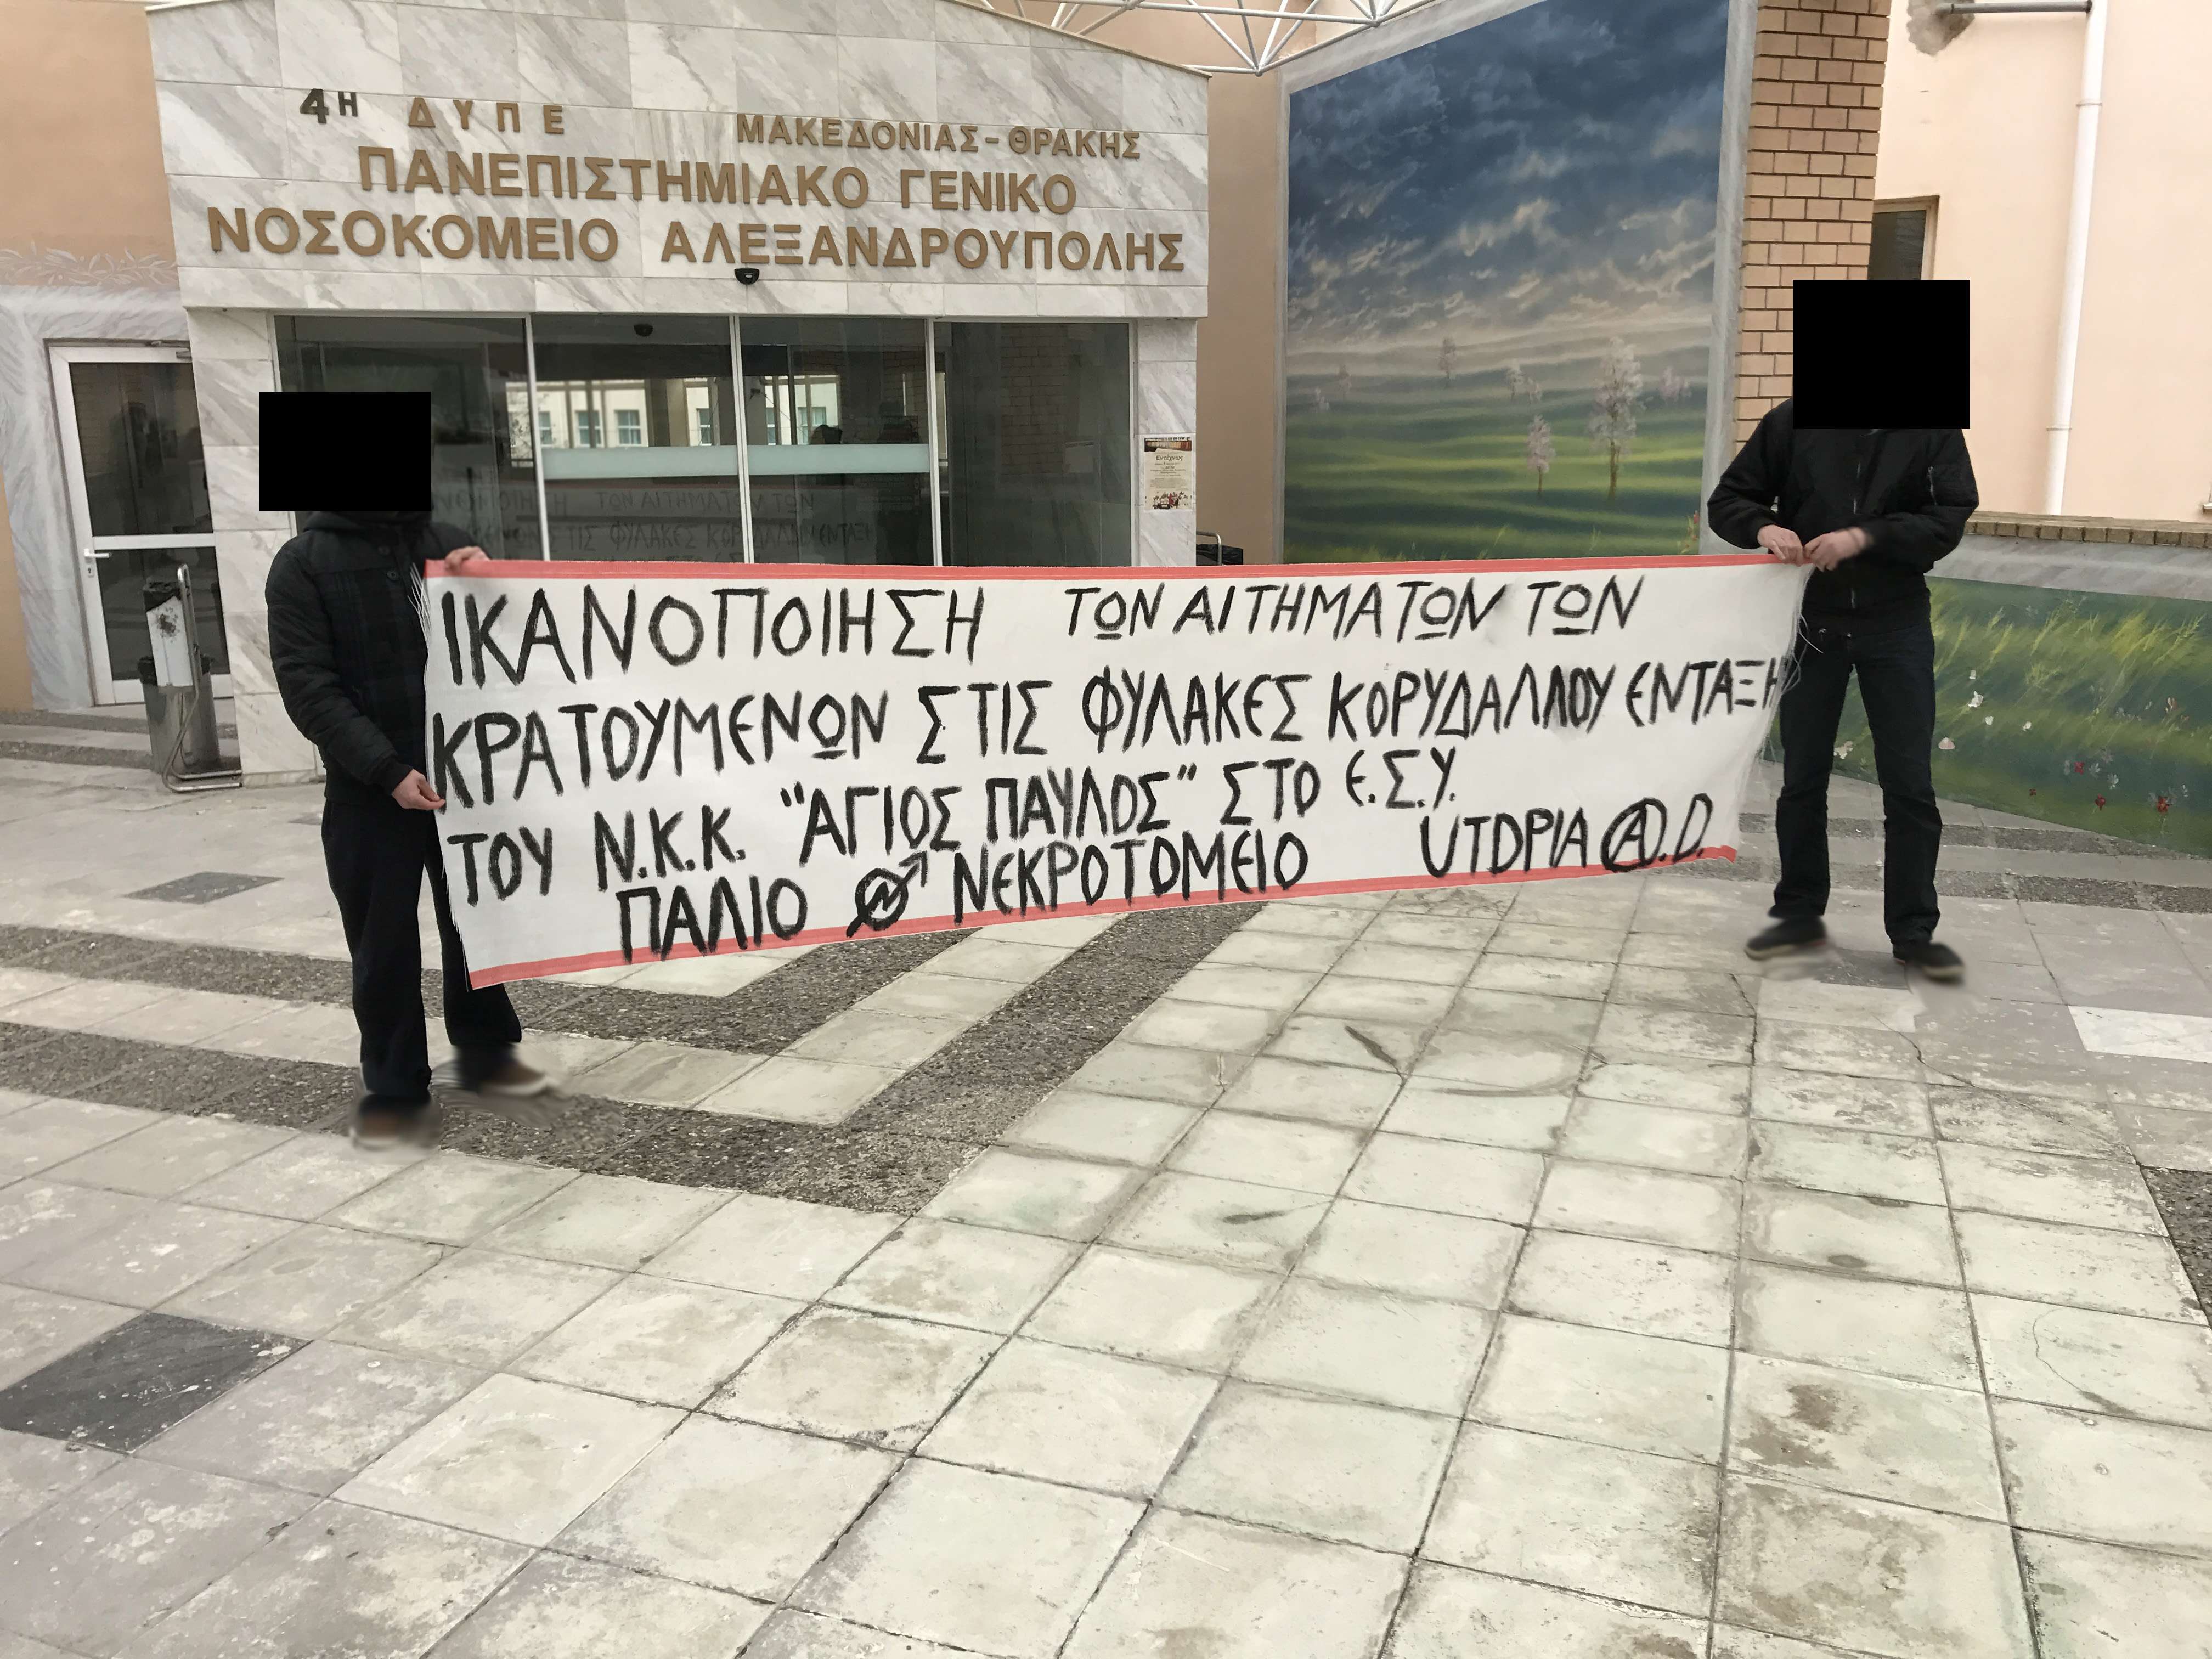 Αλεξανδρουπολη: Παρέμβαση στο πανεπιστημιακό νοσοκομείο Αλεξ/πολης για το κολαστήριο Άγιος Παύλος